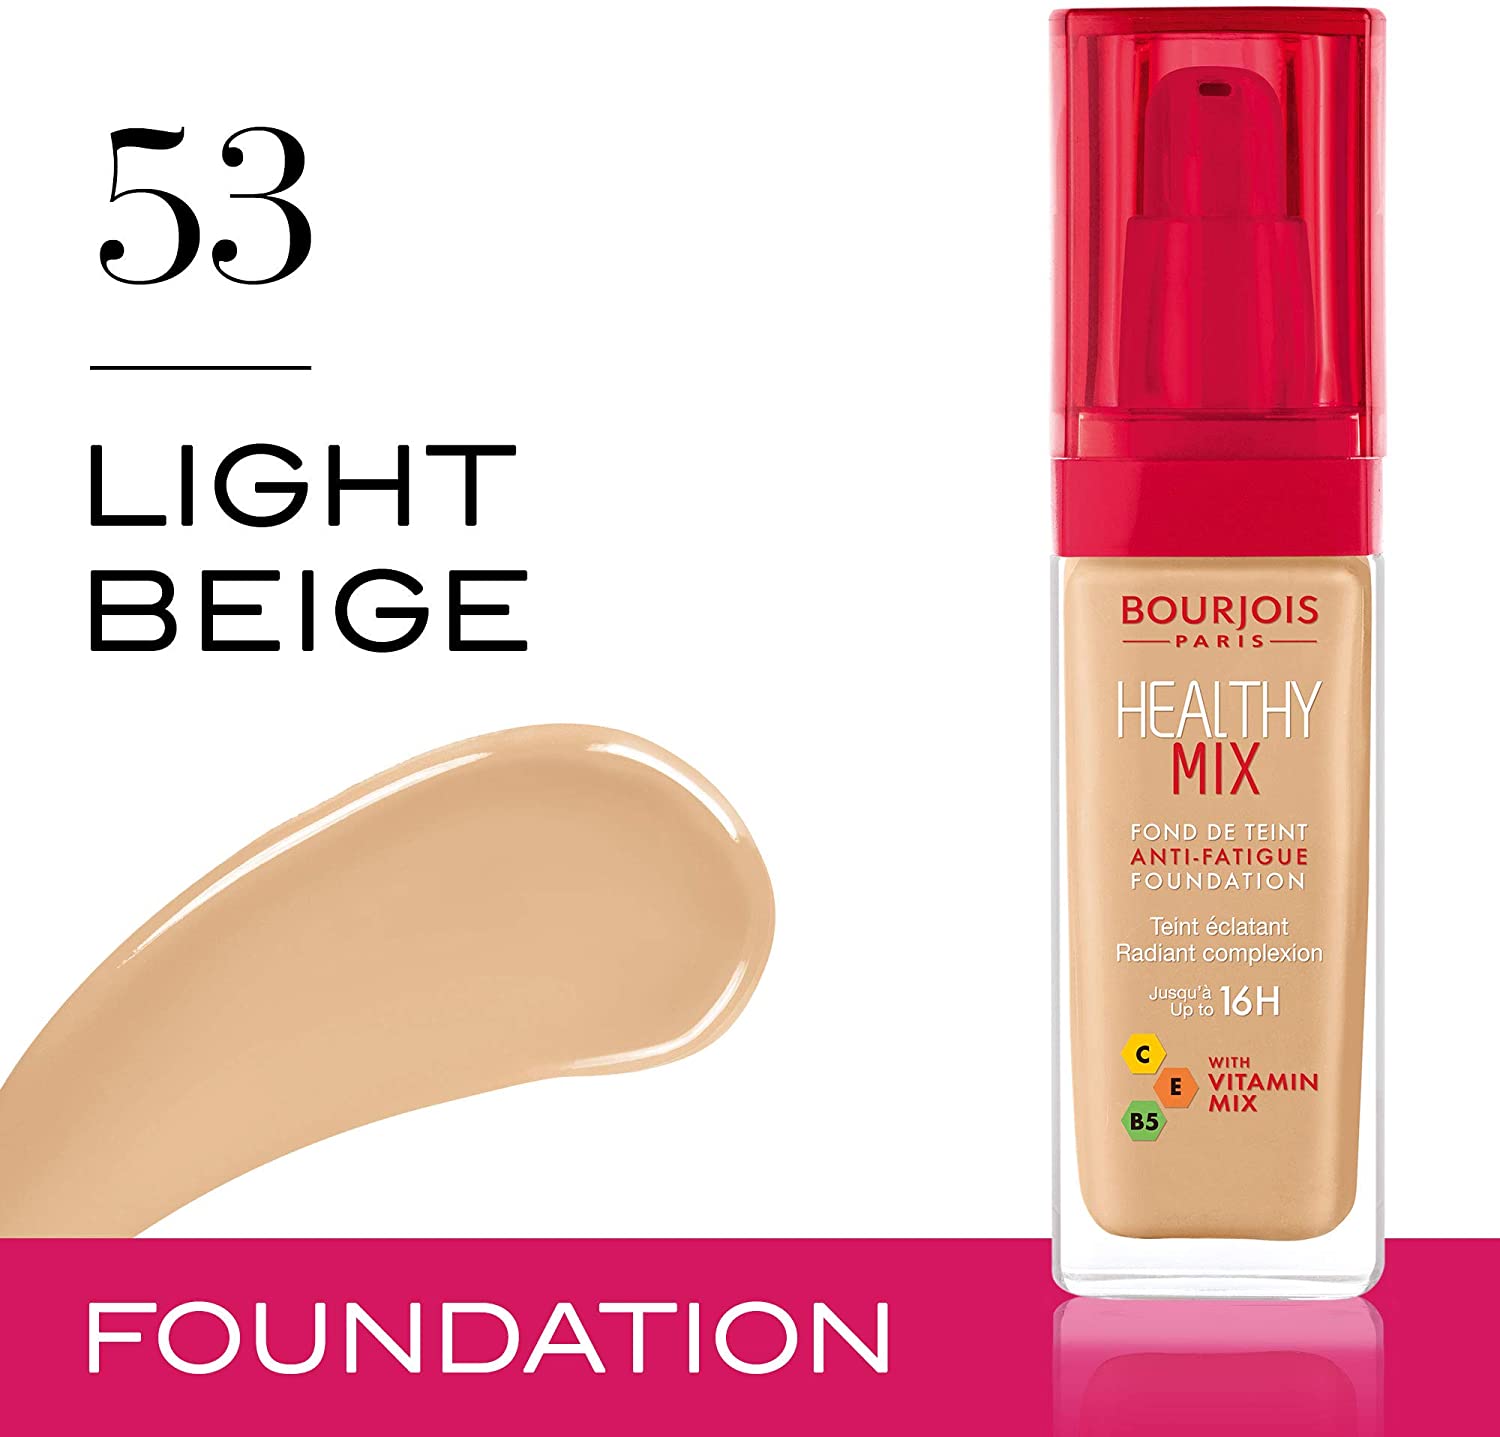 bourjois-healthy-mix-foundation-53-light-beige-30ml